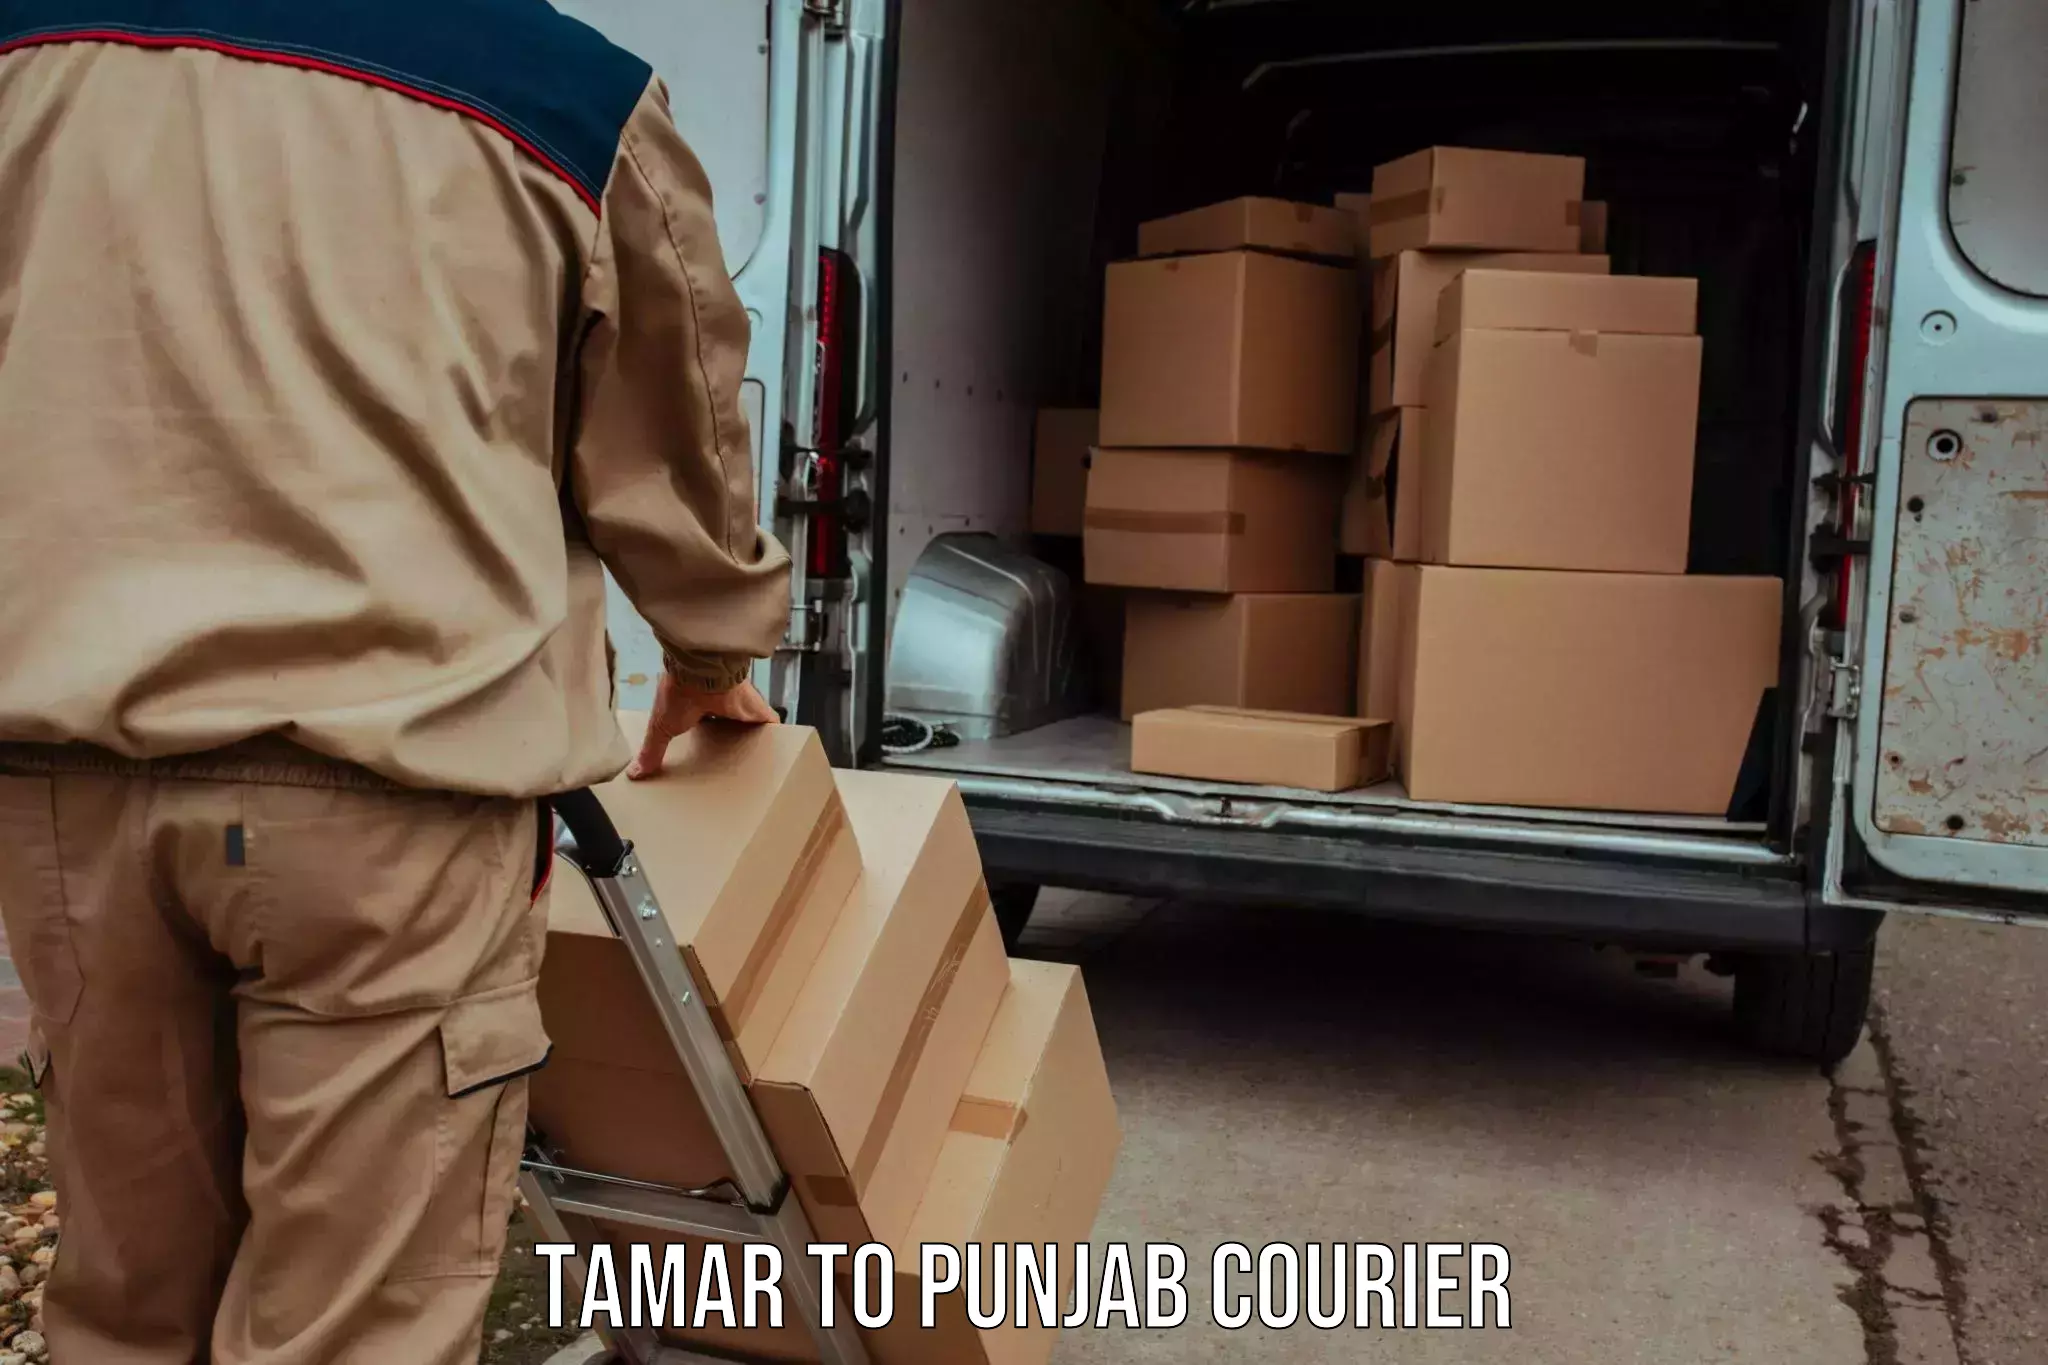 Global parcel delivery Tamar to Punjab